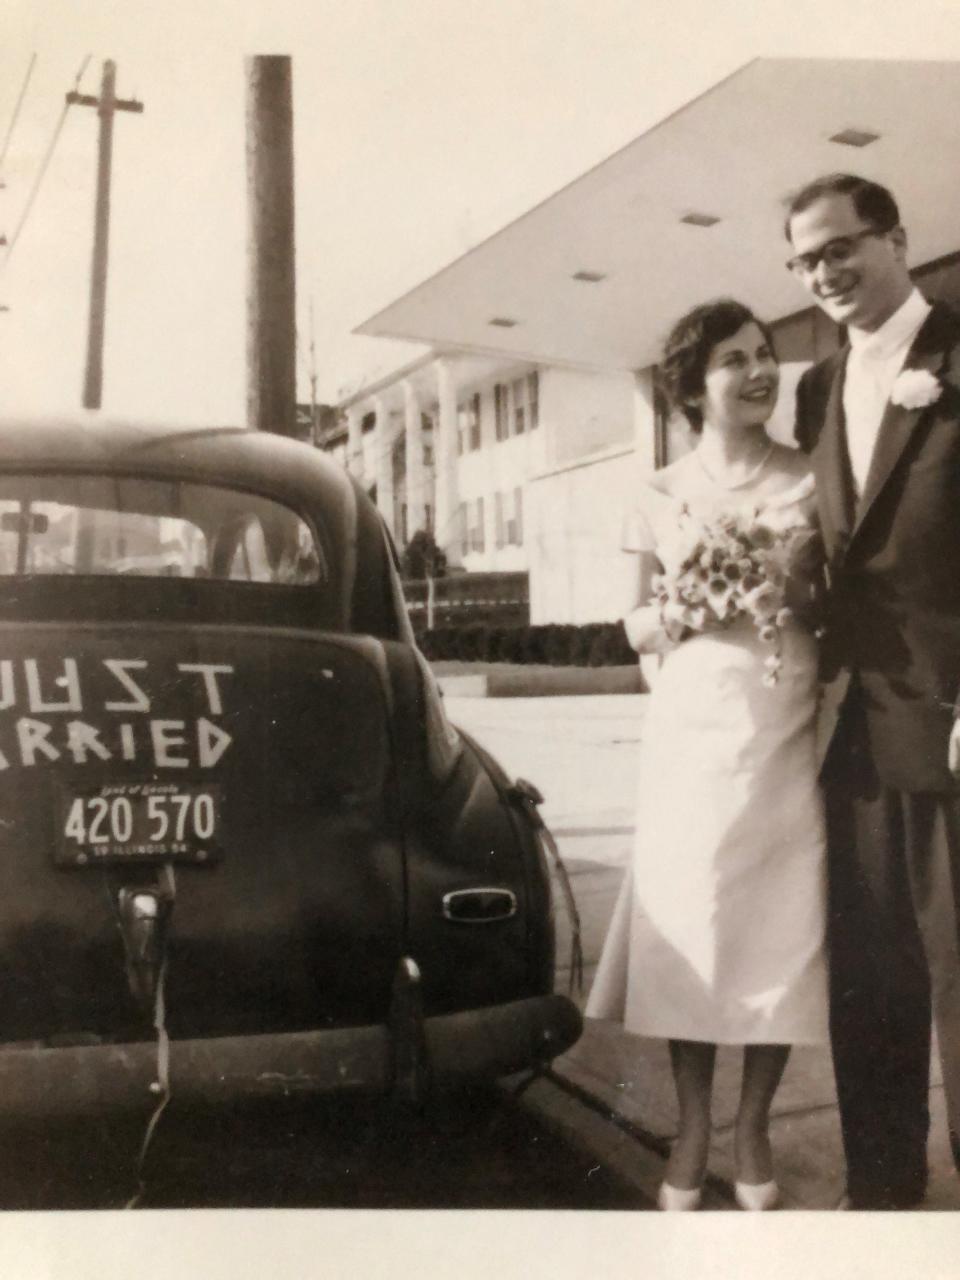 Essie and Hank Schweich, both 21, on their wedding day in Dayton, Ohio, March 28,1954